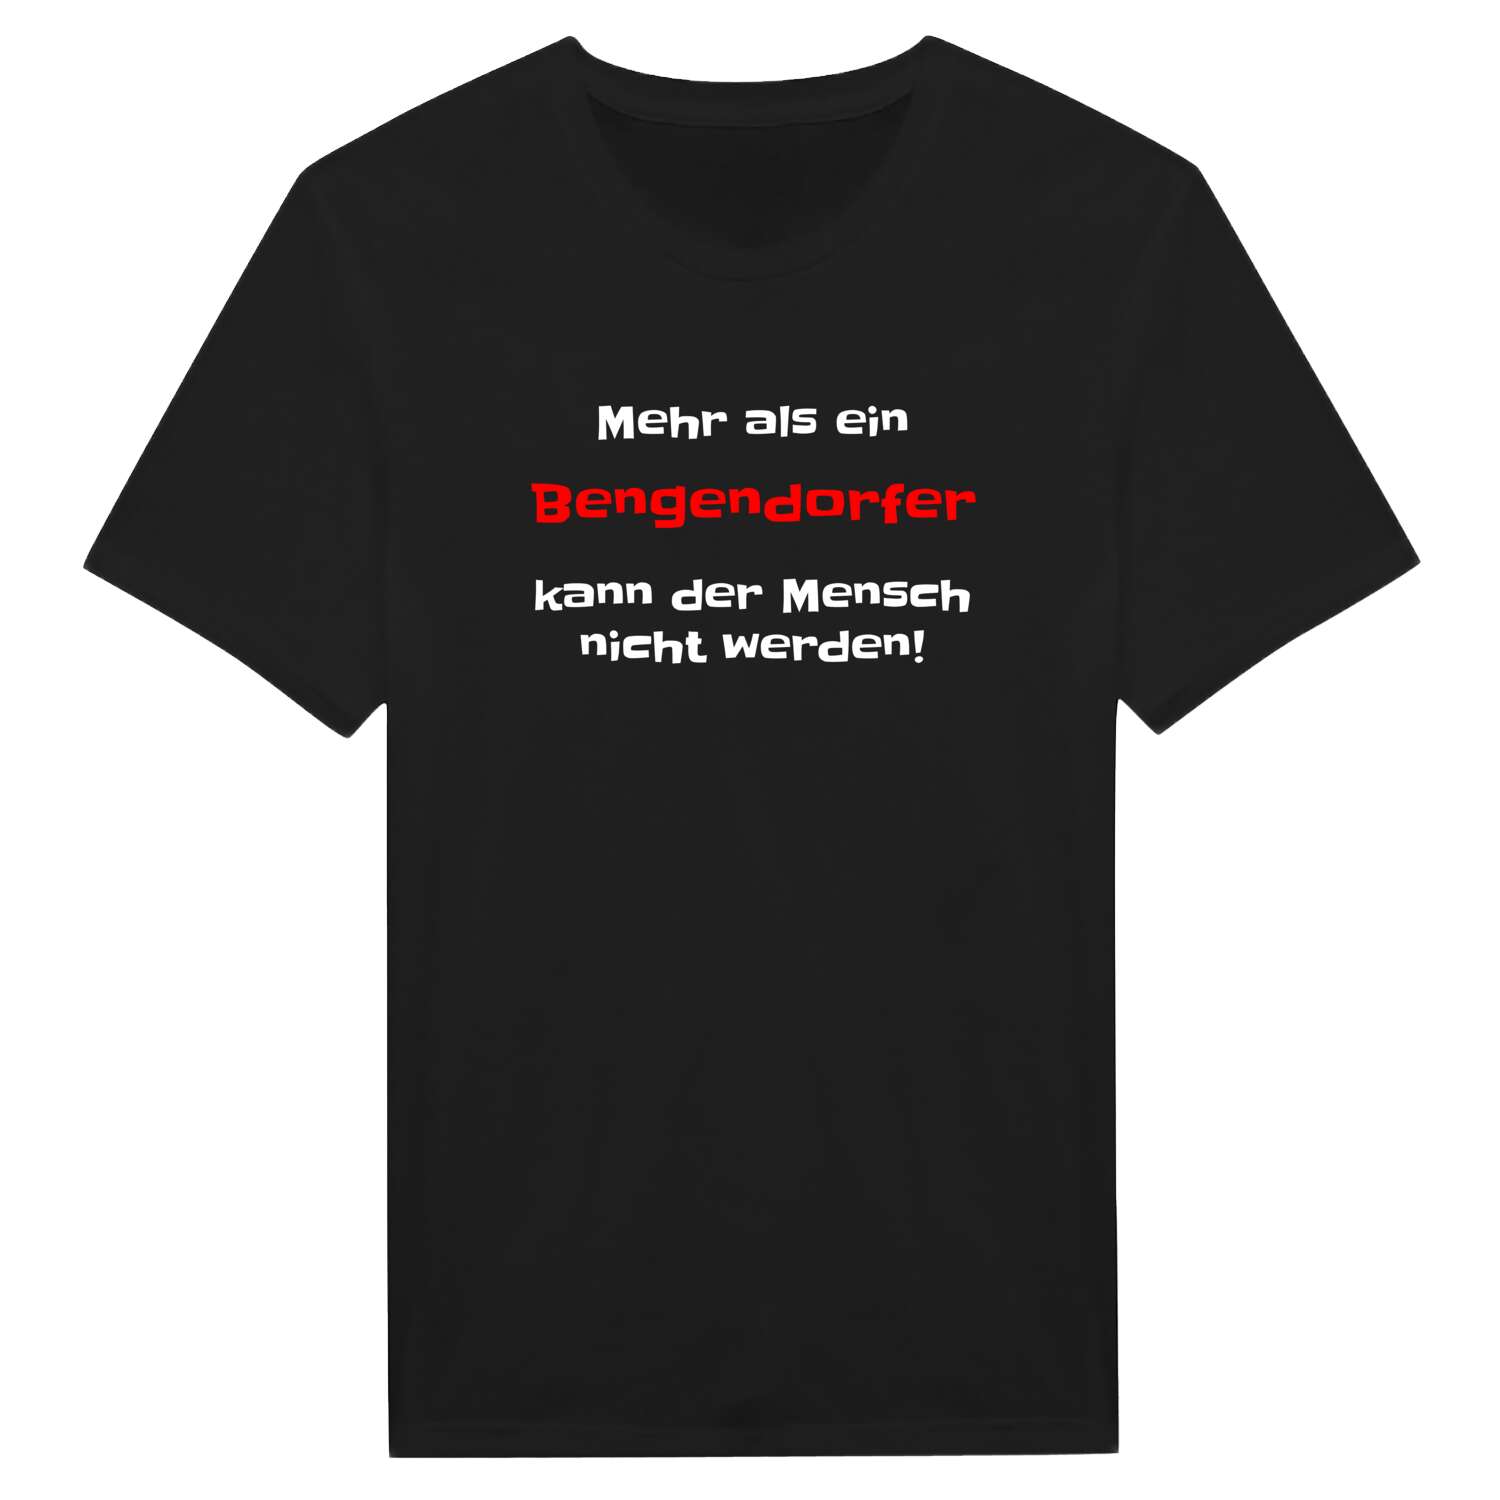 Bengendorf T-Shirt »Mehr als ein«